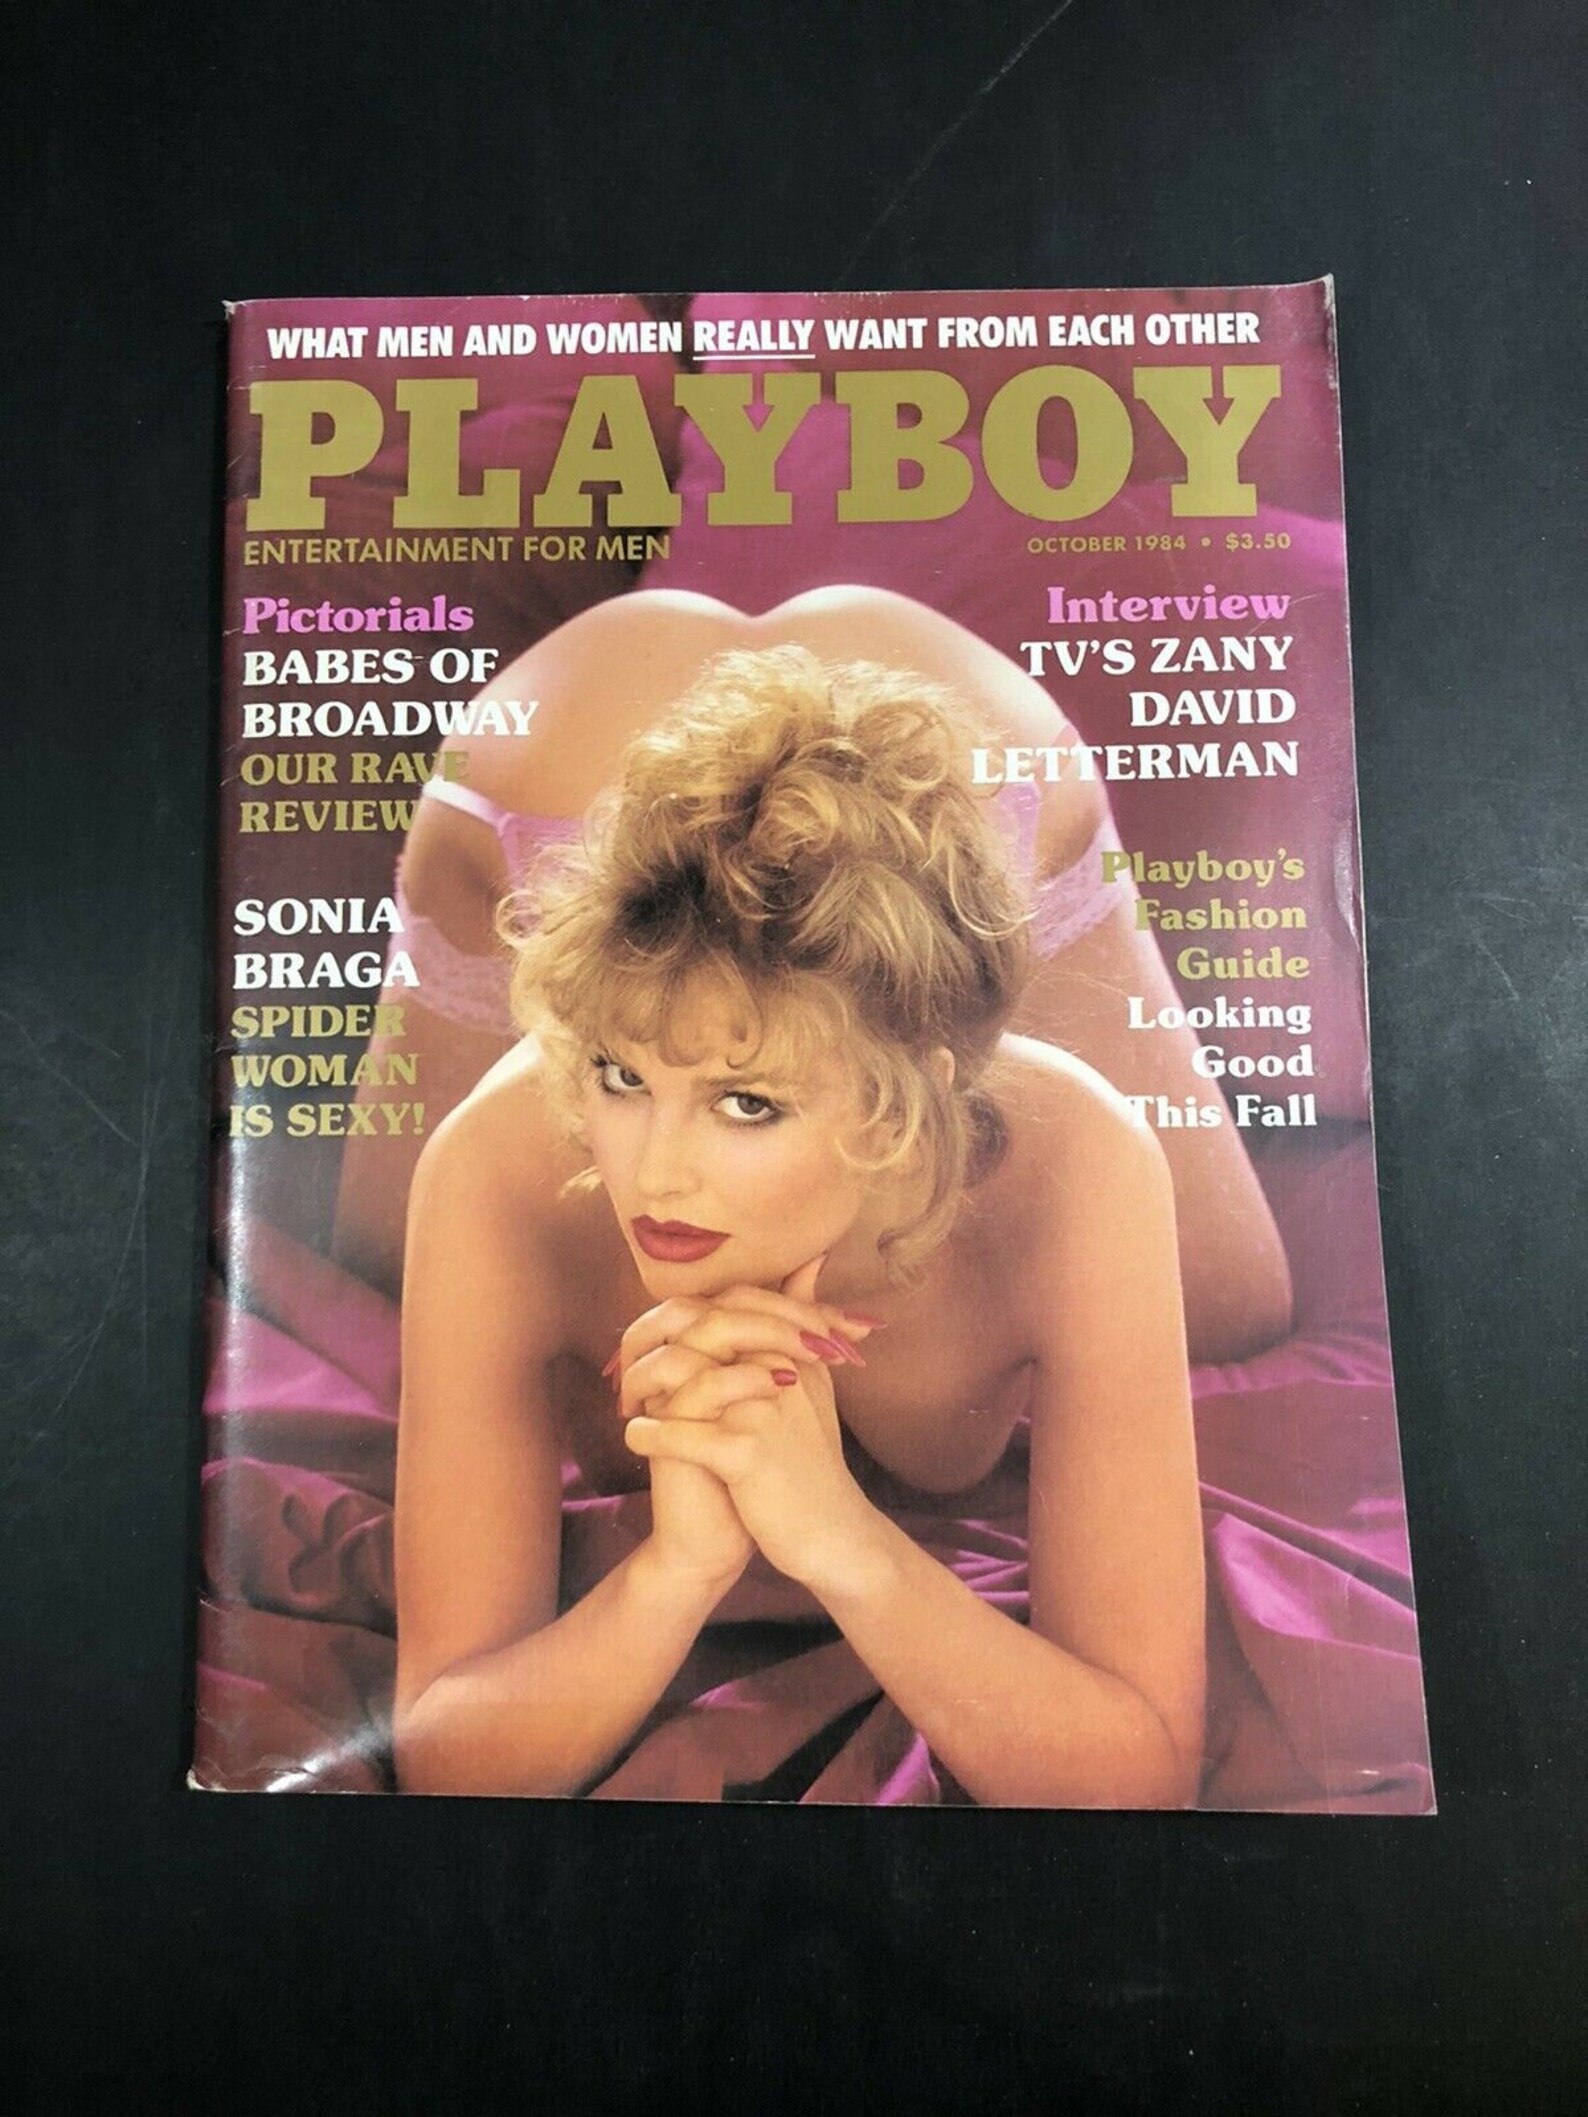 Playboy october 1984